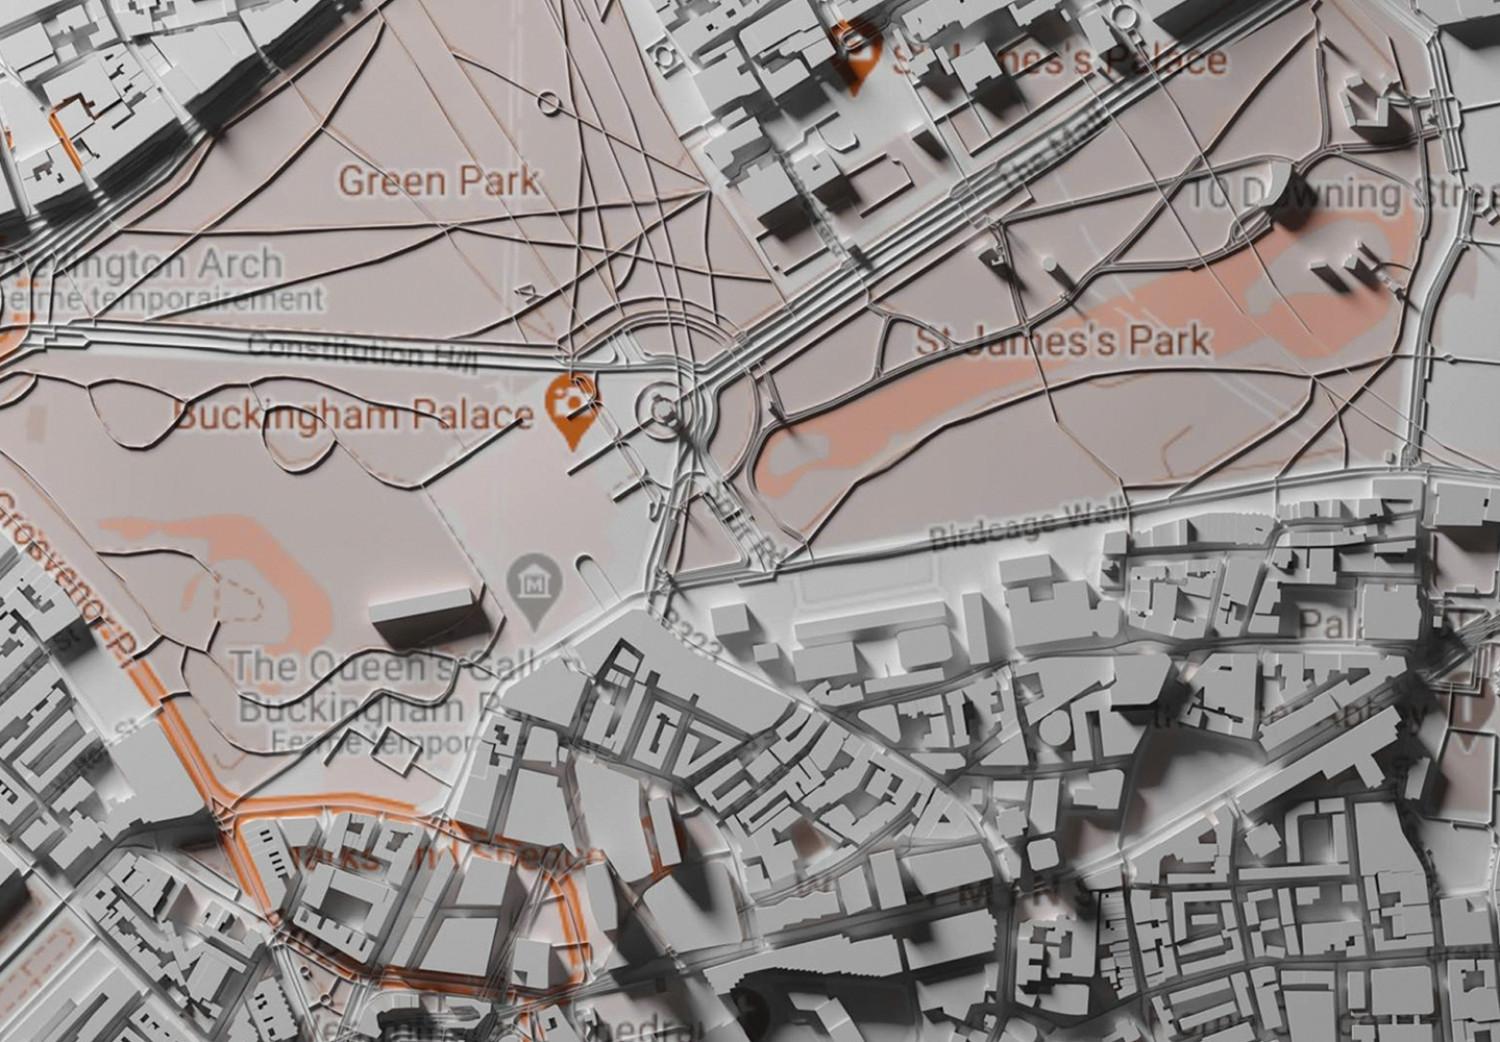 Cuadro Londres 3D - maqueta de la capital de Inglaterra con lugares marcados